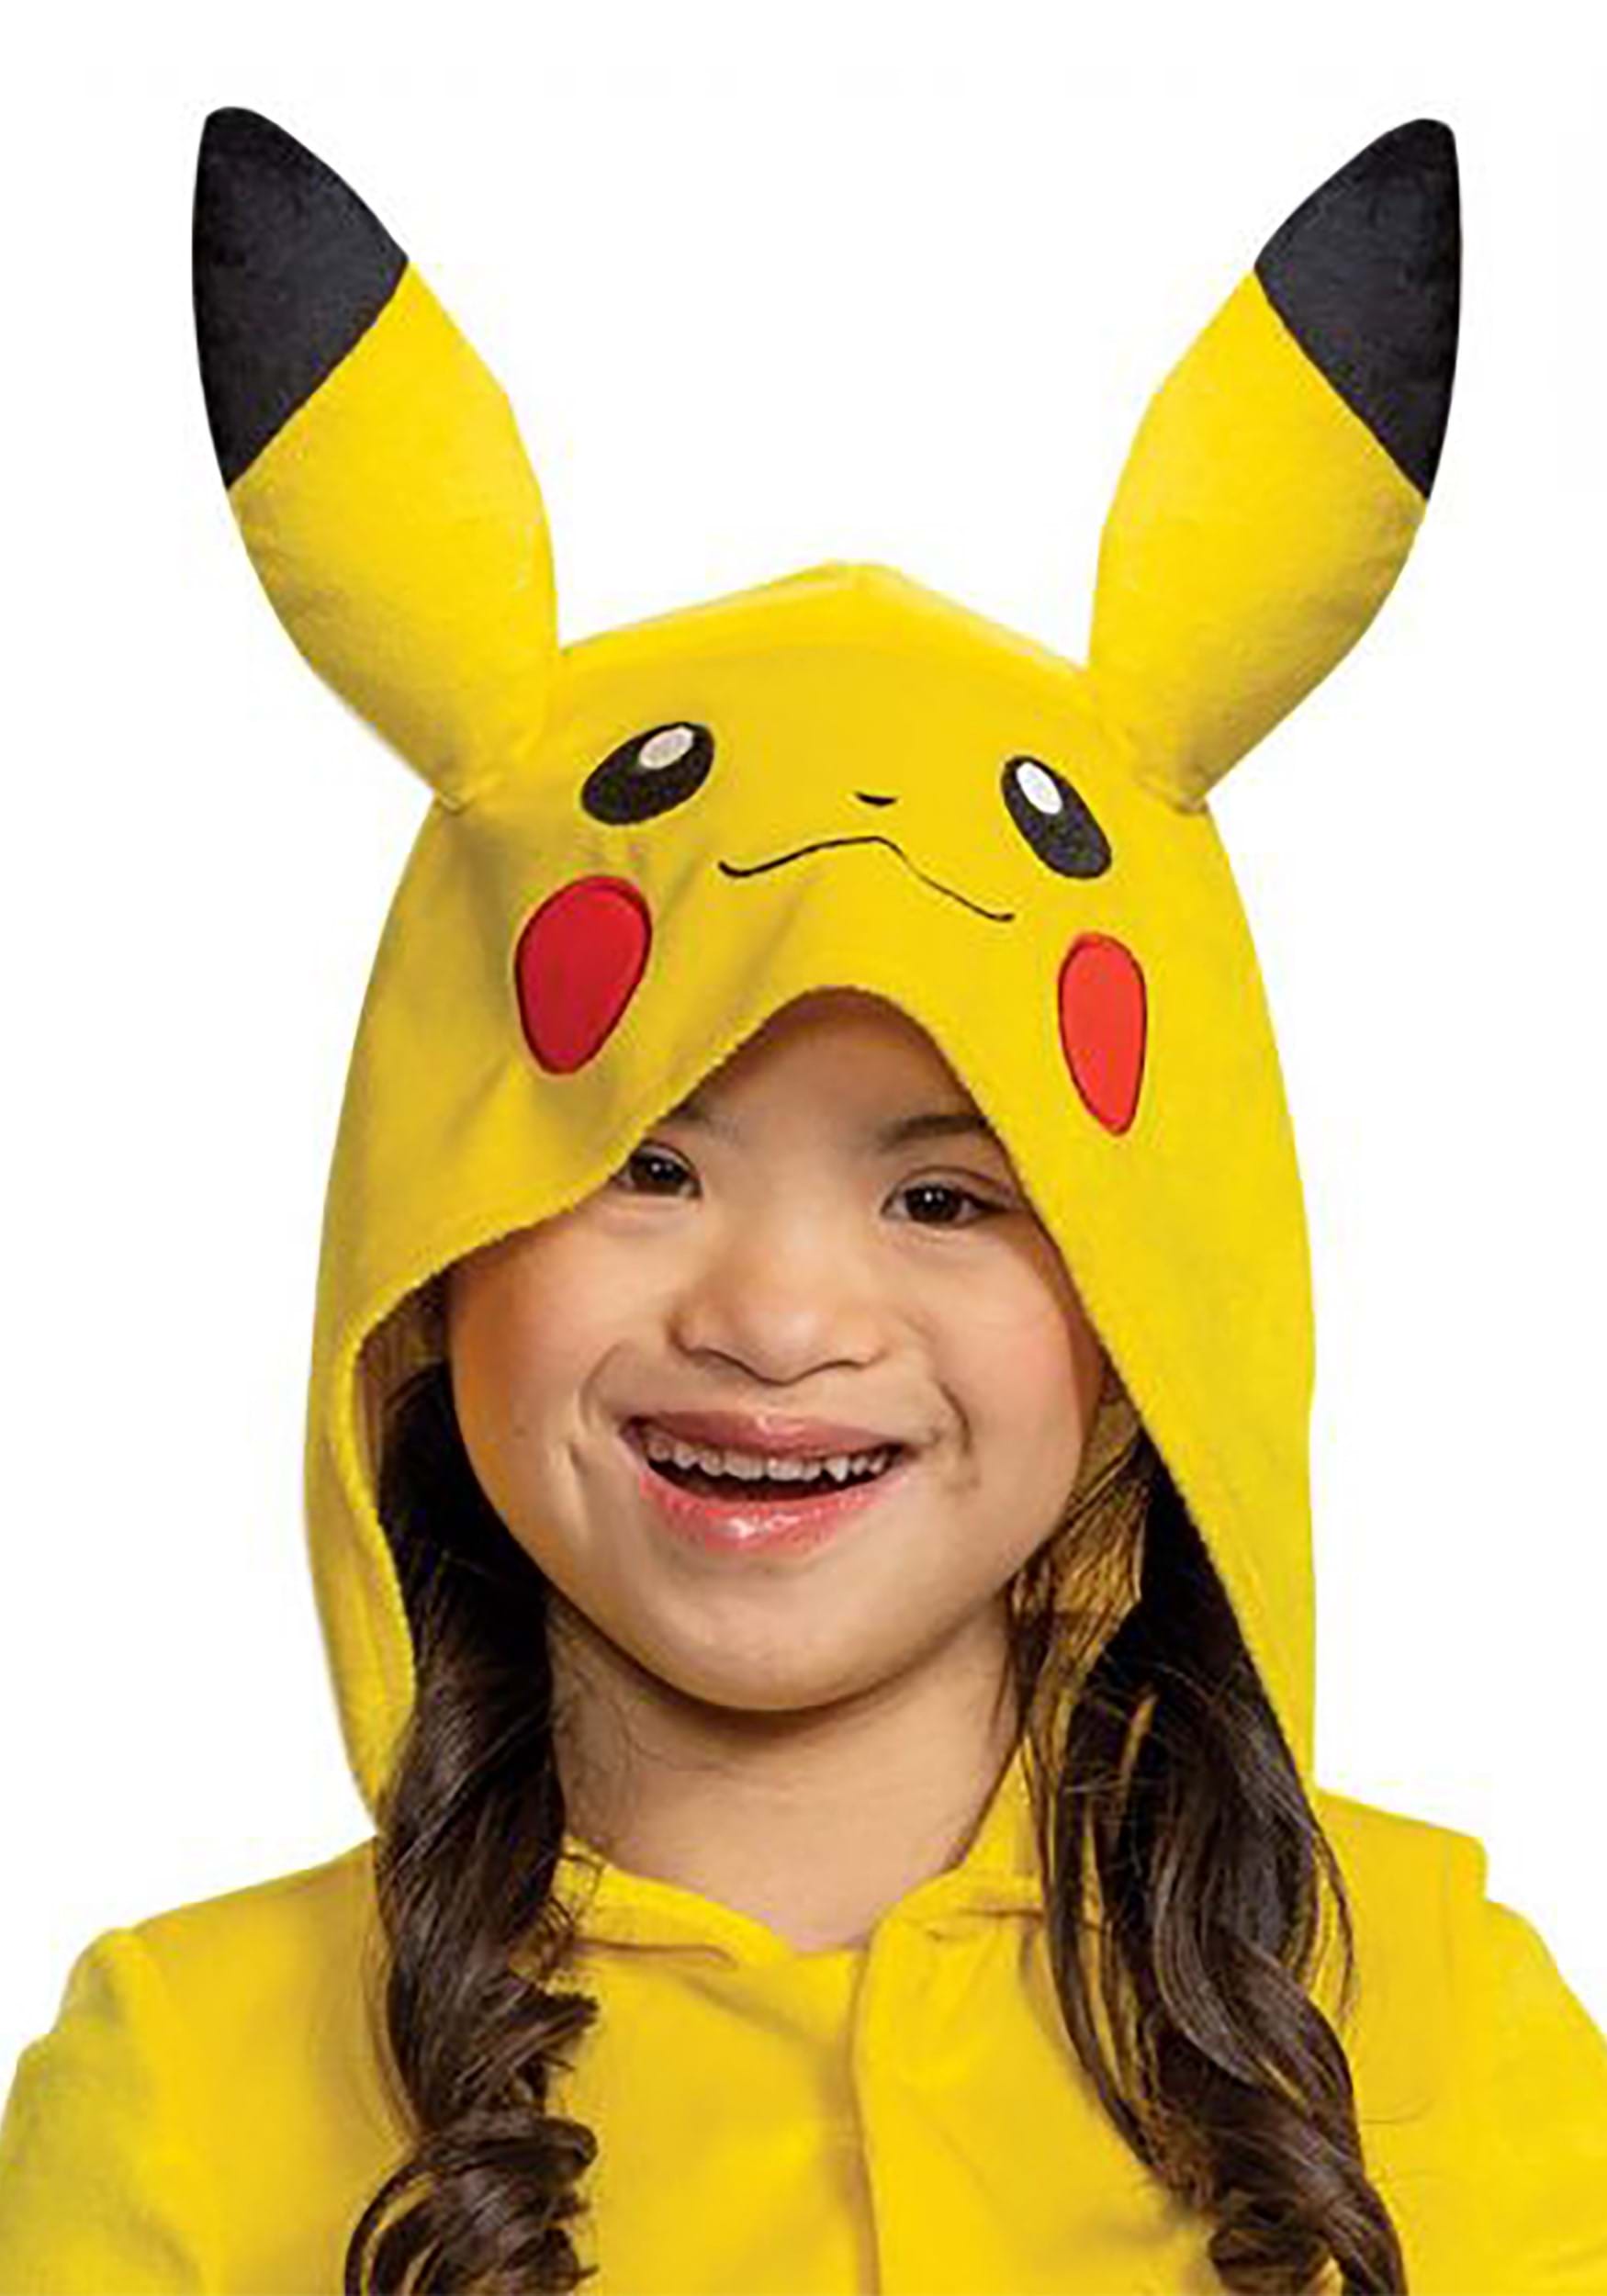  Pikachu Dress